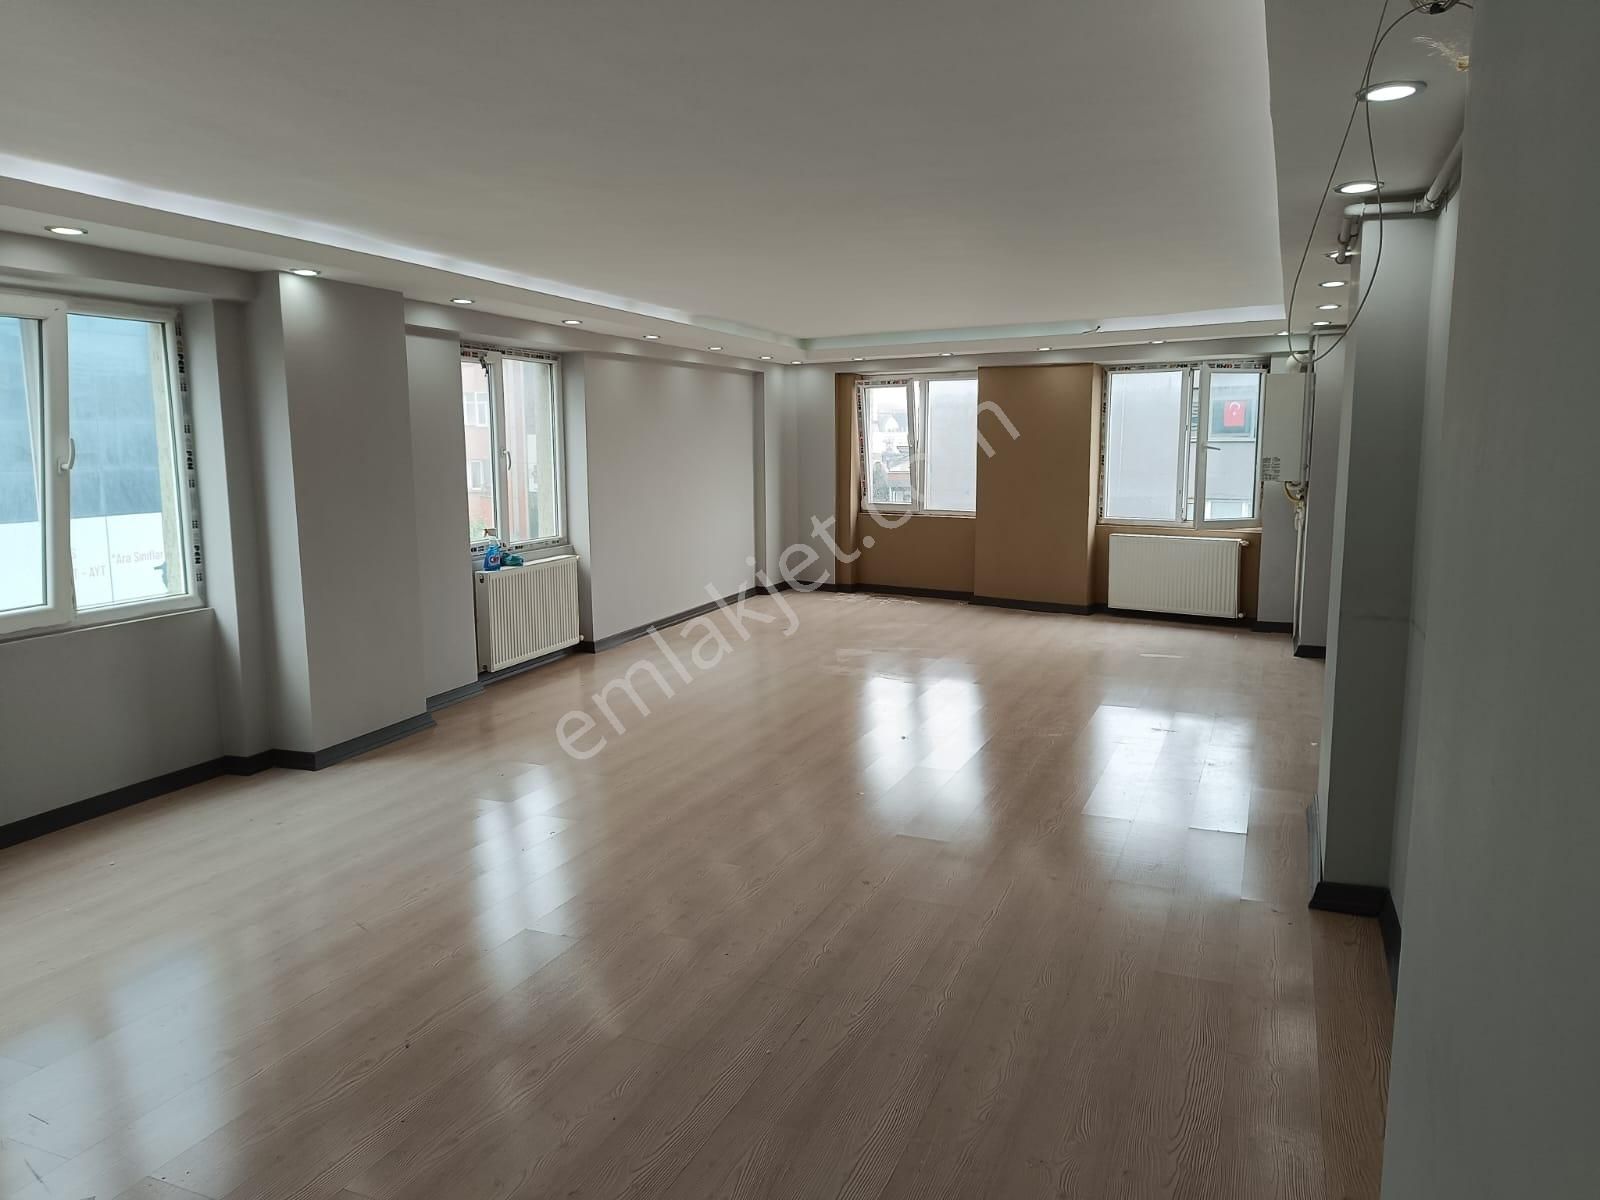 Ümraniye Atatürk Kiralık Büro  Anka Real Estate / Ümraniye Alemdağ Caddesi 80 m2 Kiralık Ofis